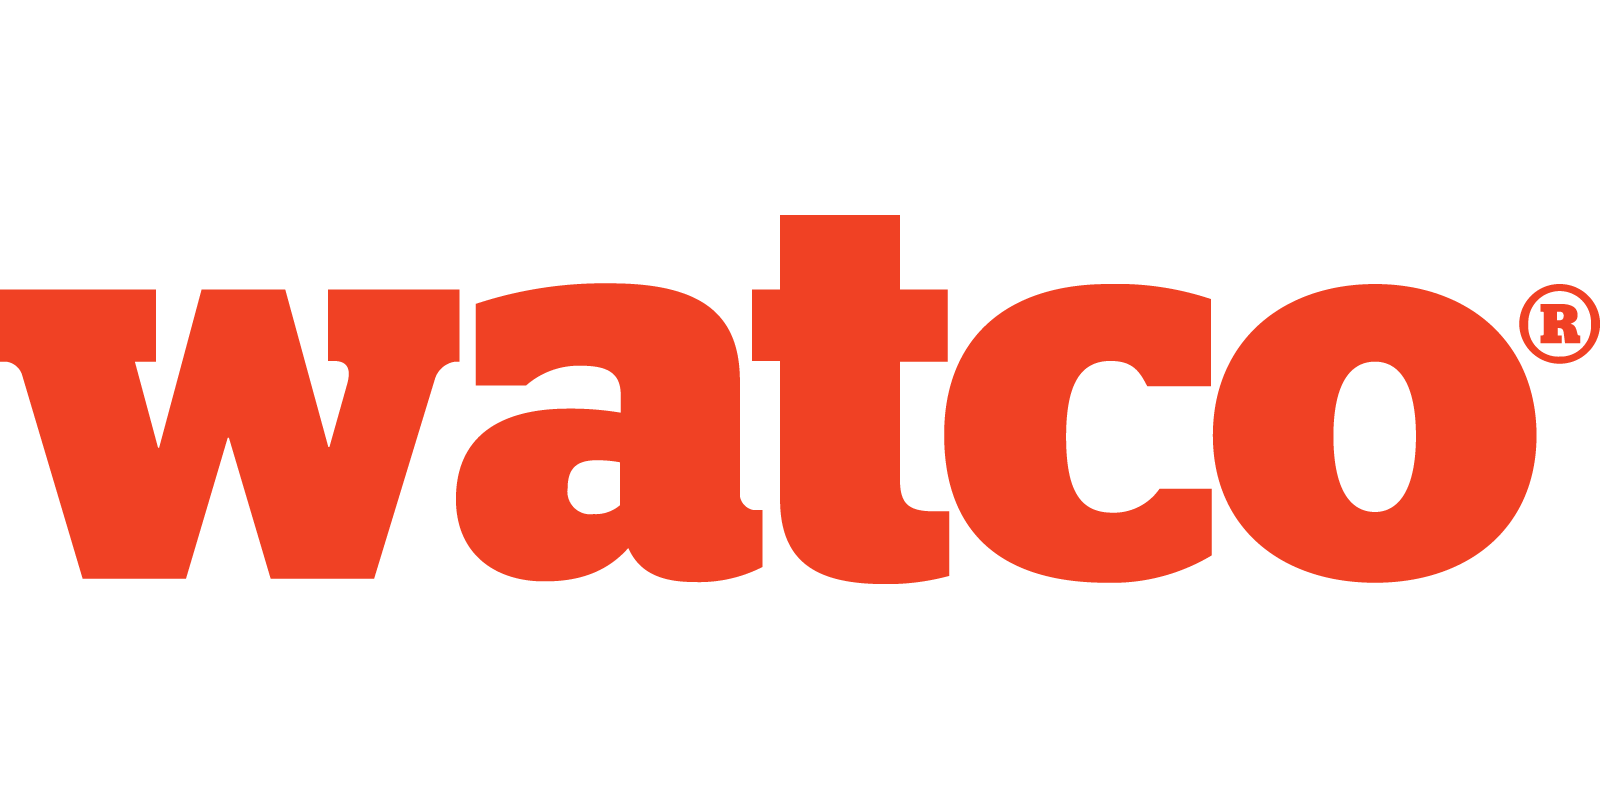 Watco